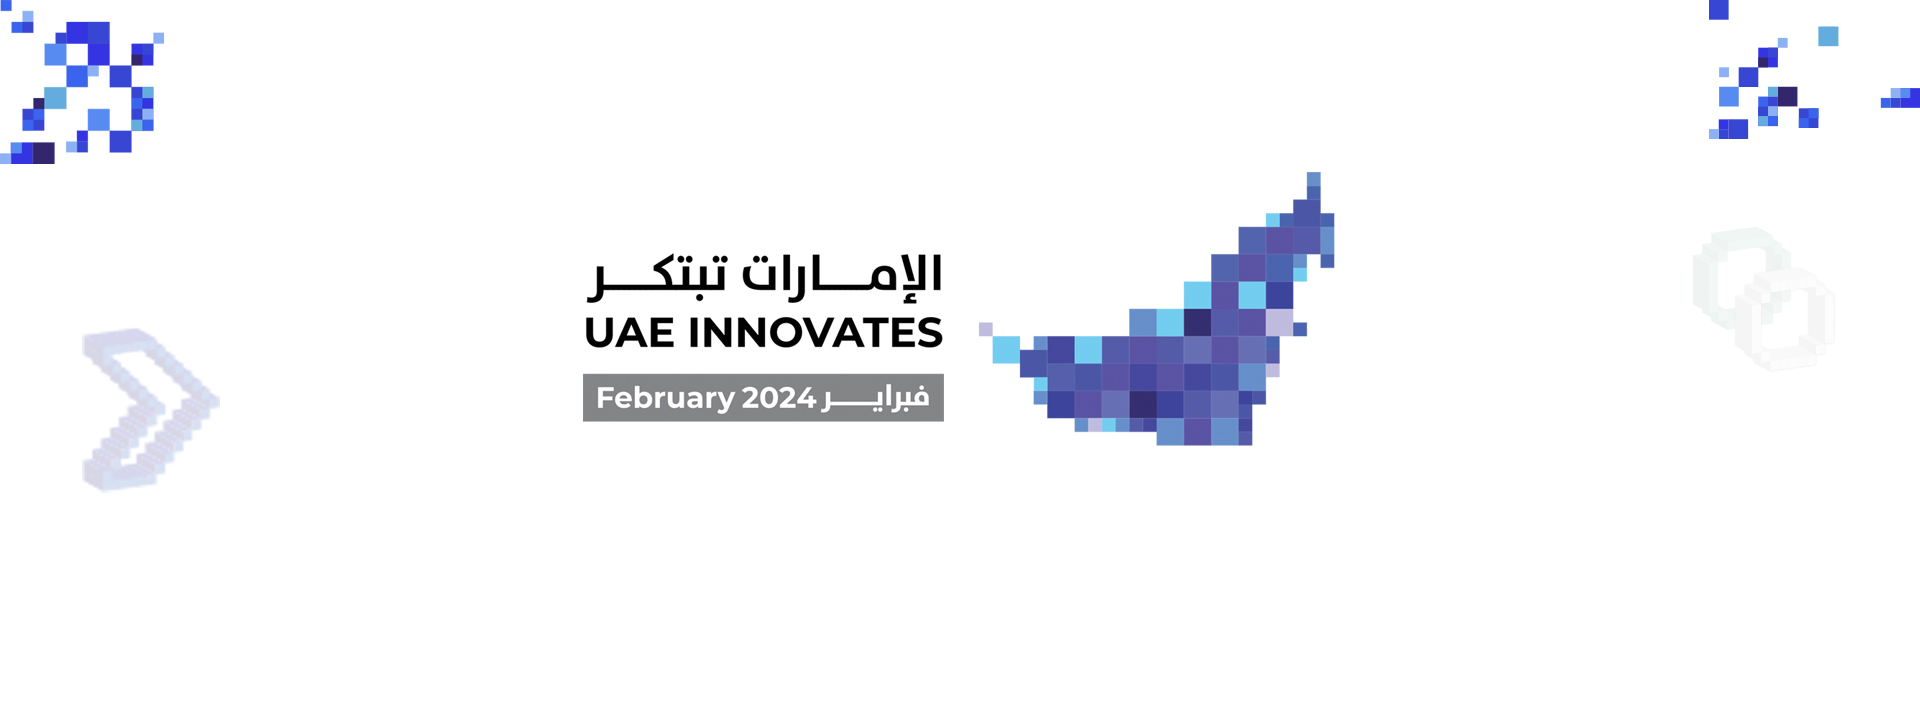 UAE INNOVATES 2024